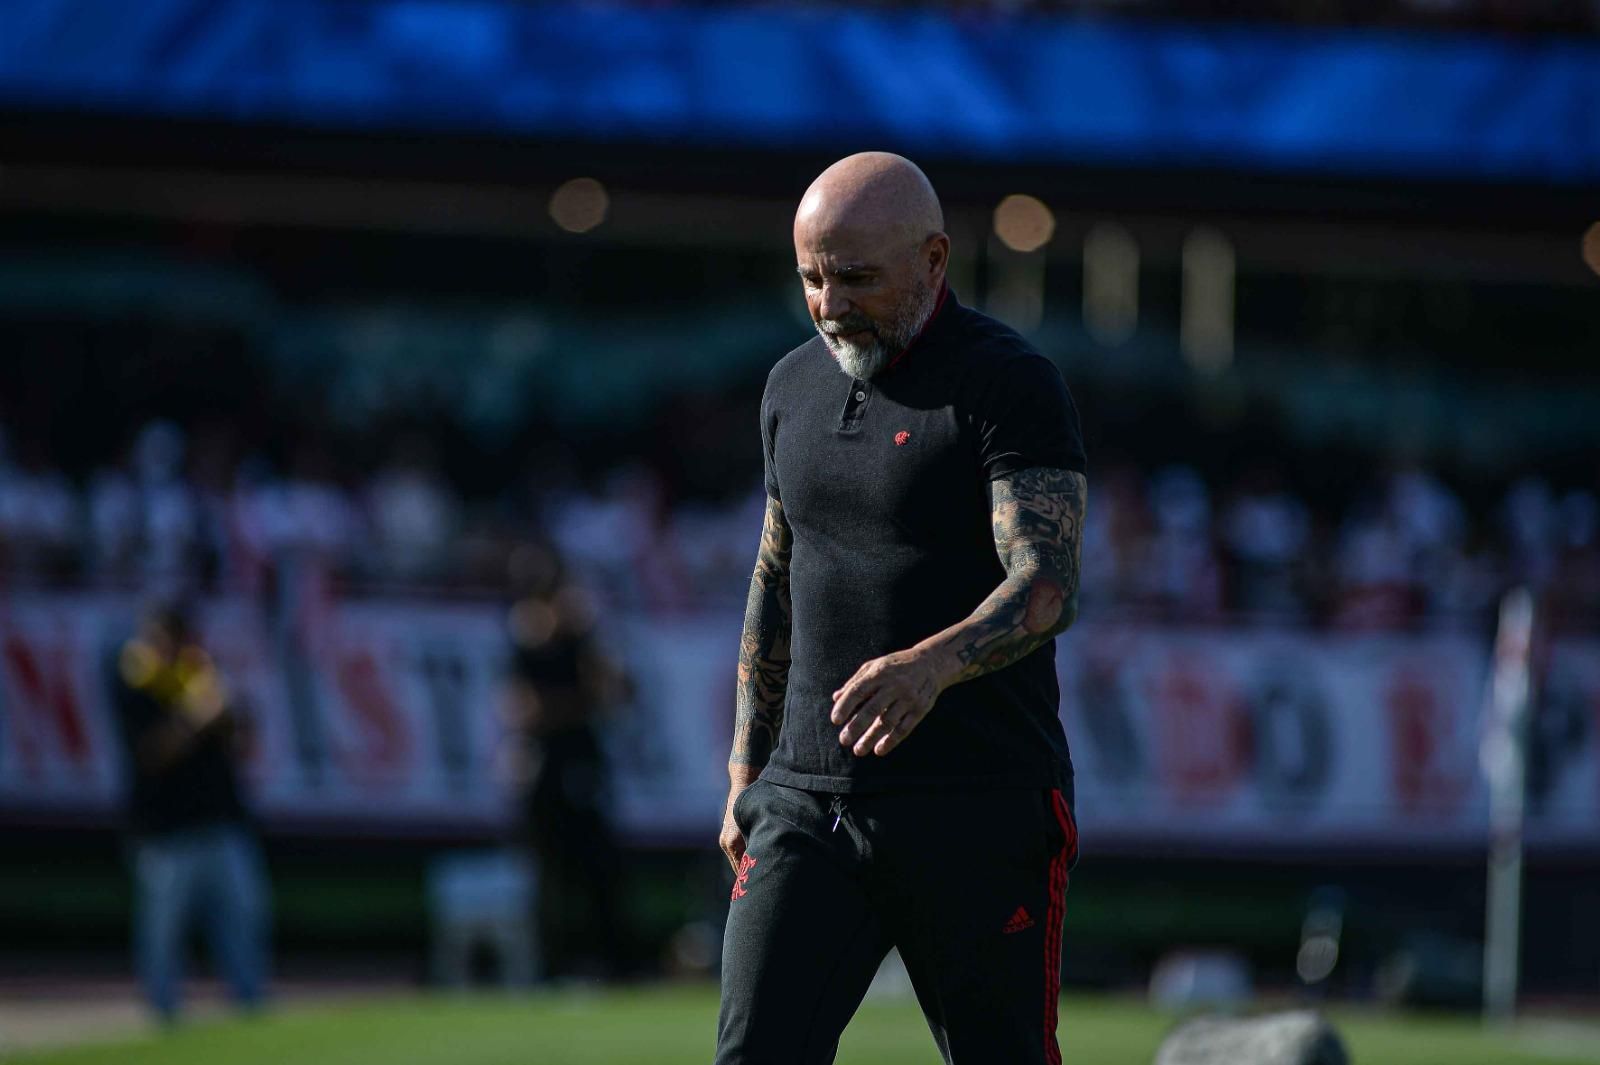 Agressões e derrotas: Flamengo vive clima tenso antes de jogo